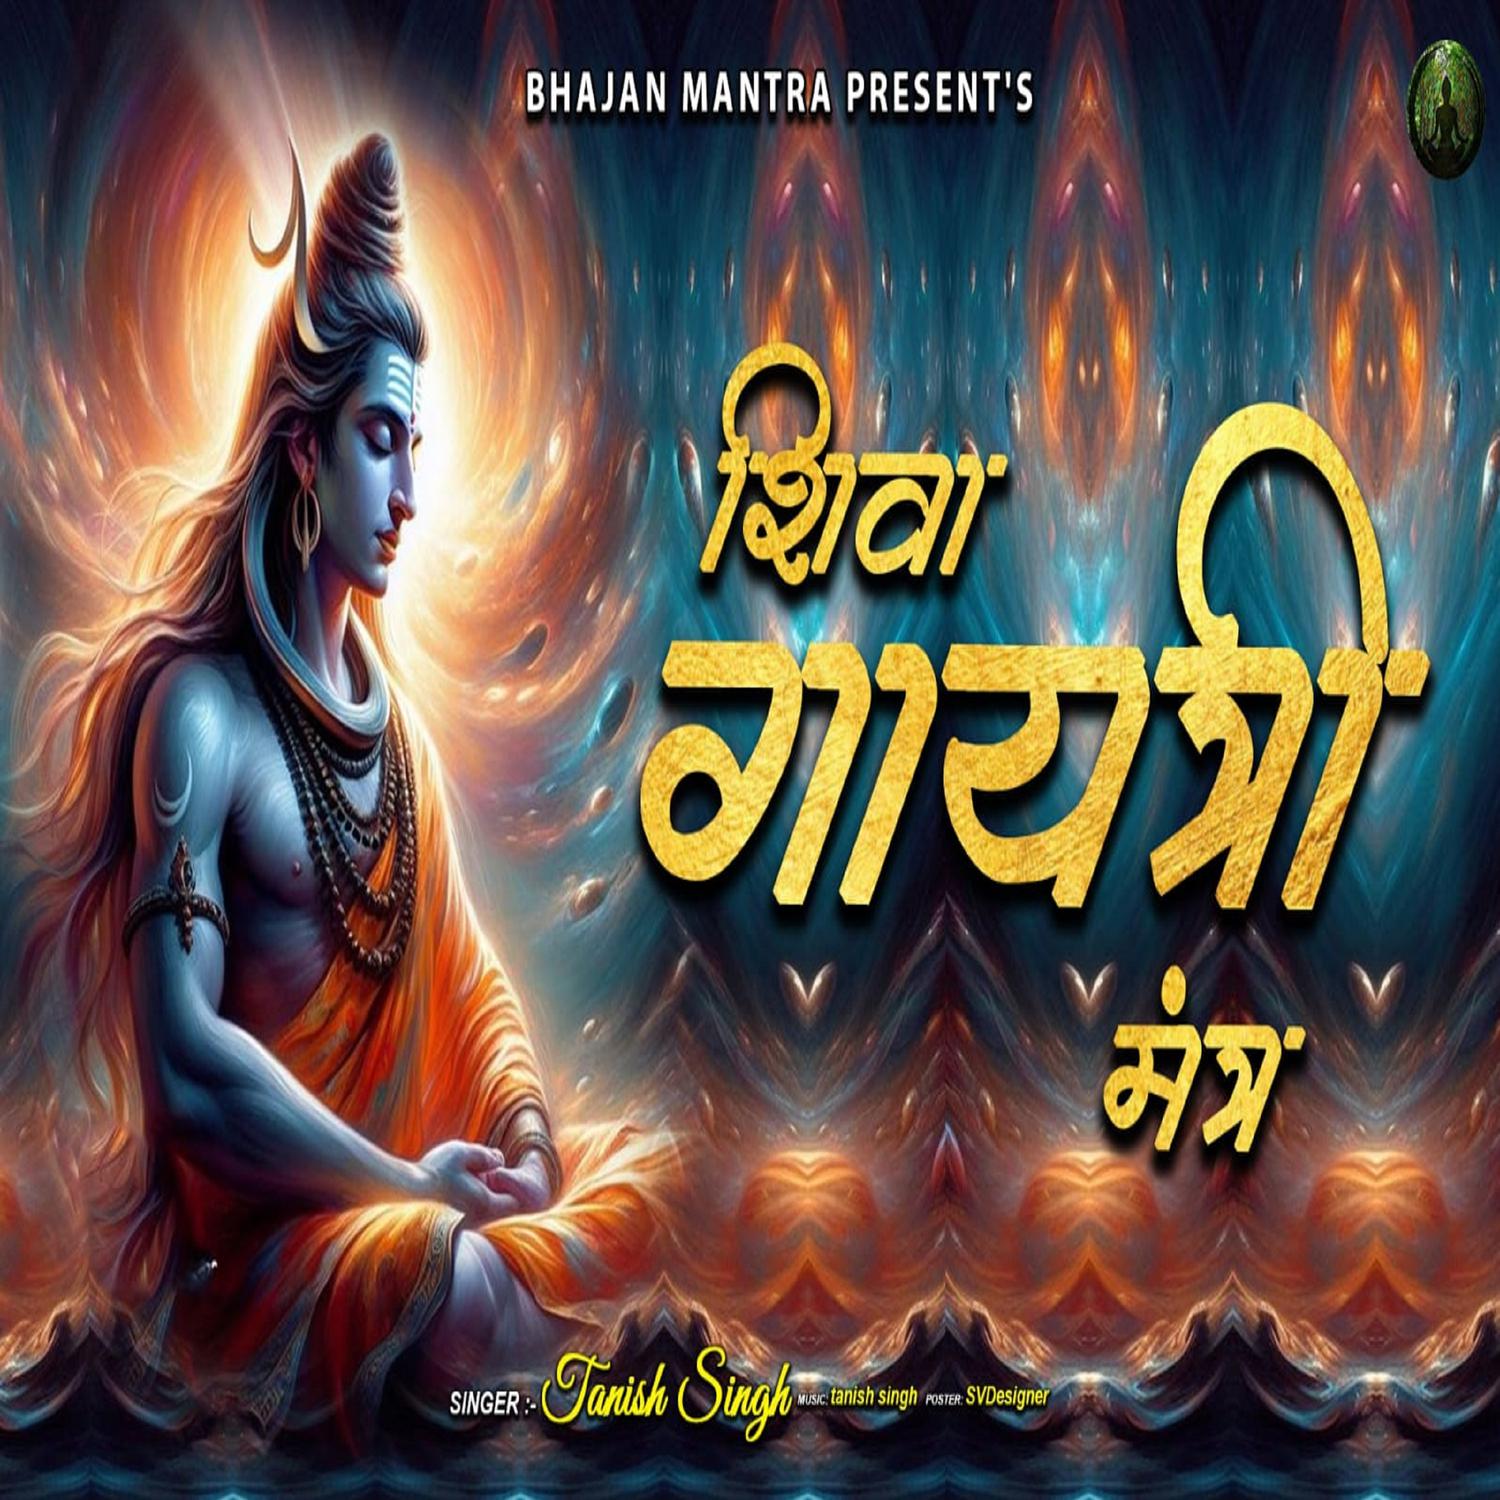 Tanish singh - Shiva Gayatri Mantra